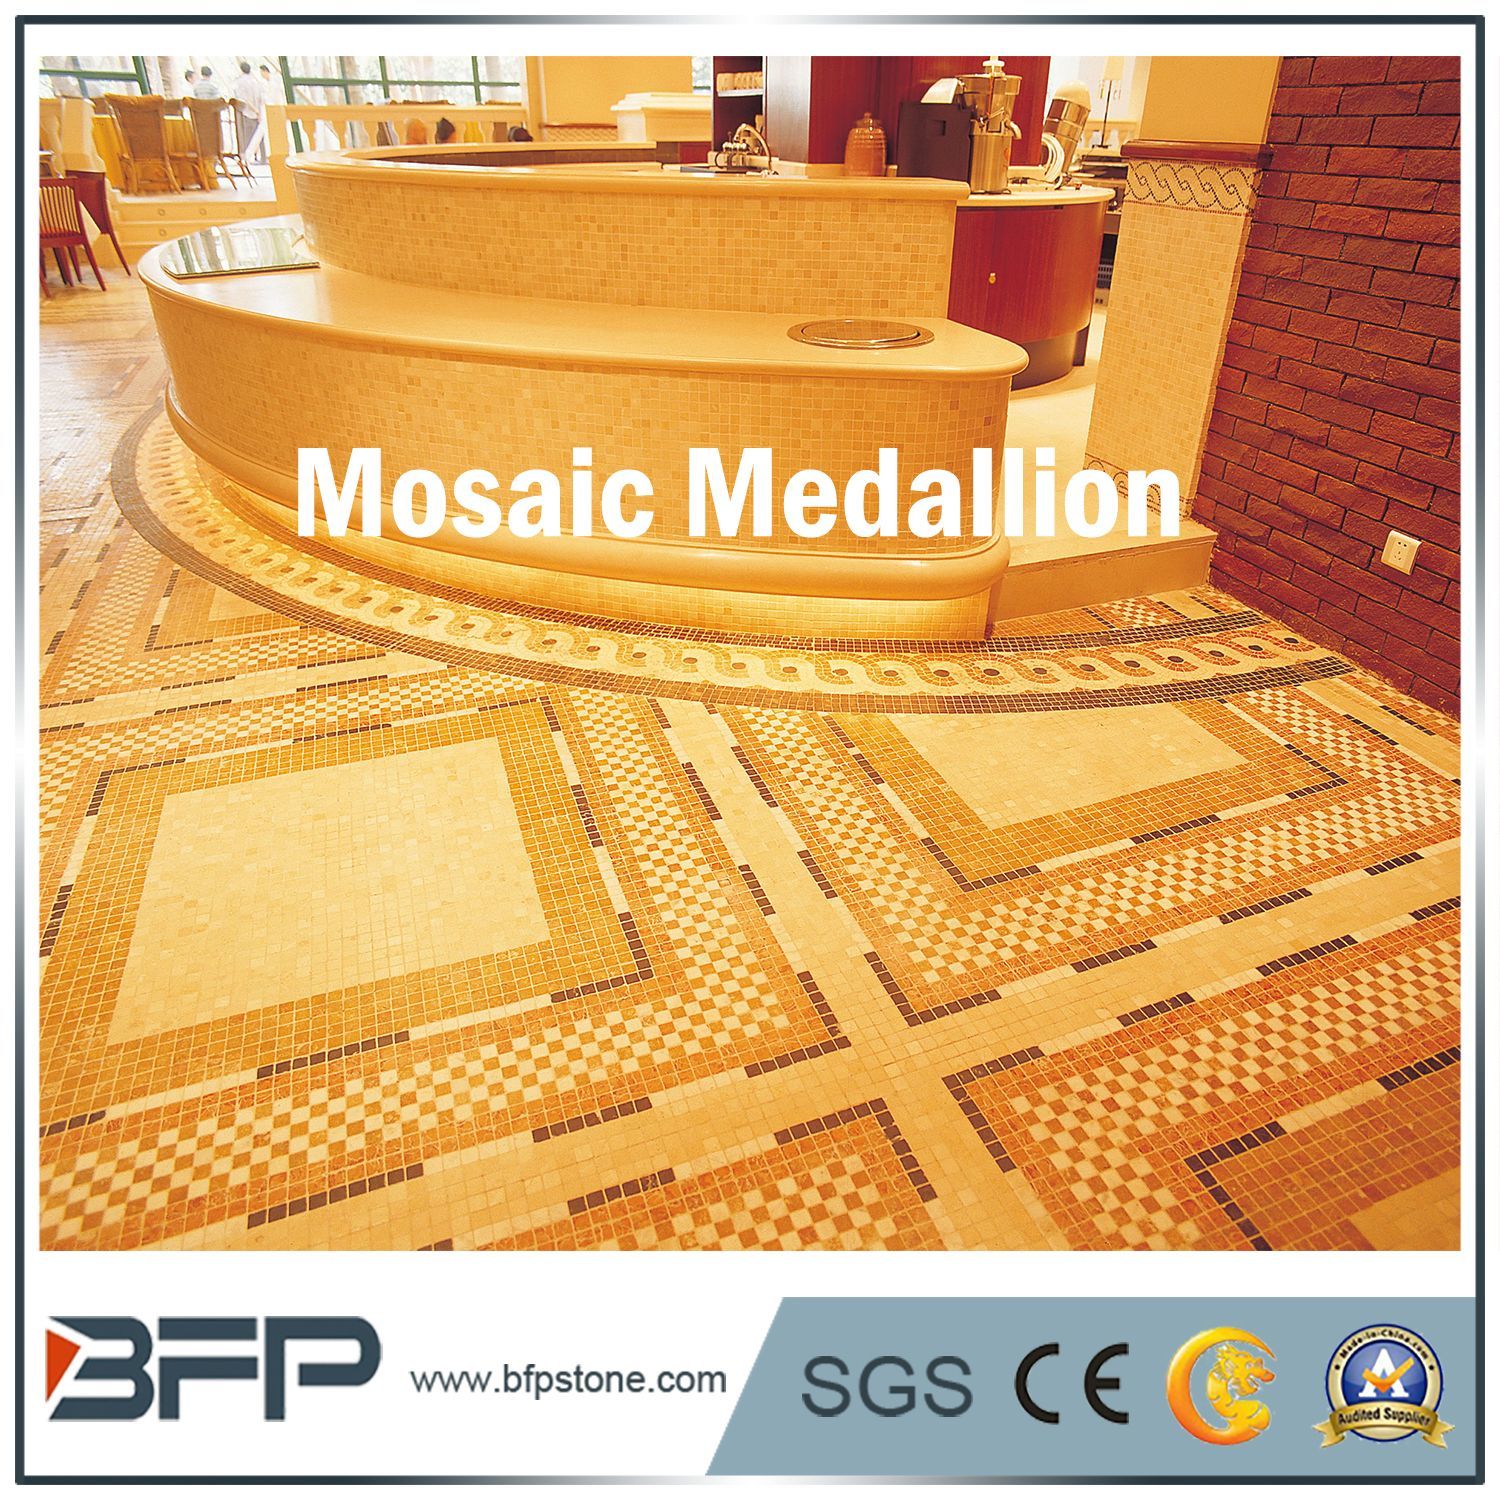 Medallion--from BFP (1).jpg